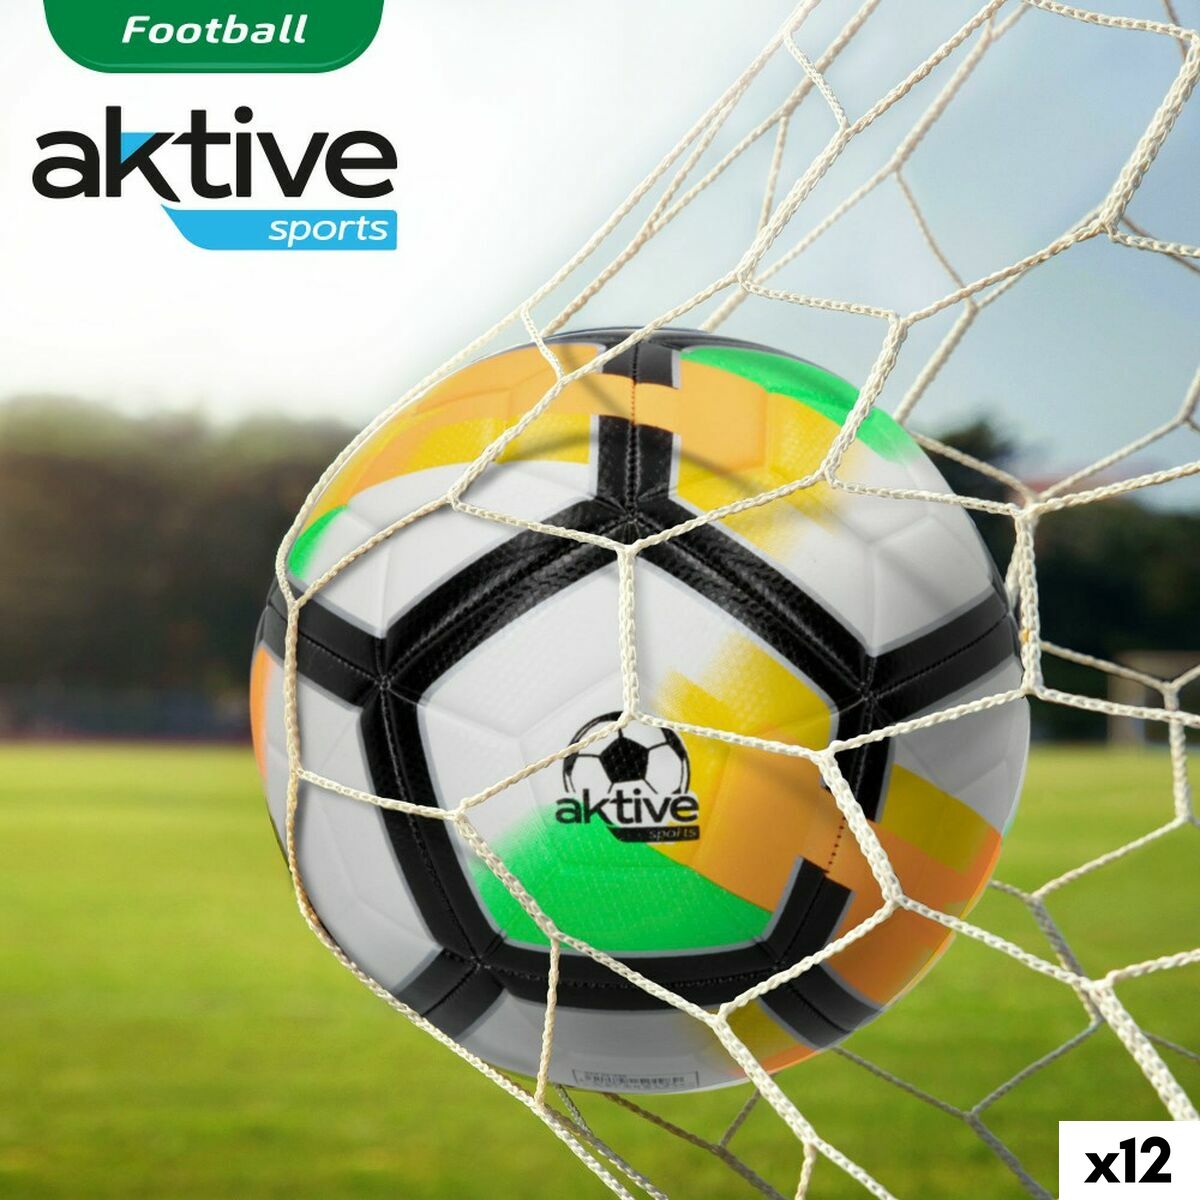 Football Aktive 5 Ø 22 cm (12 Units)